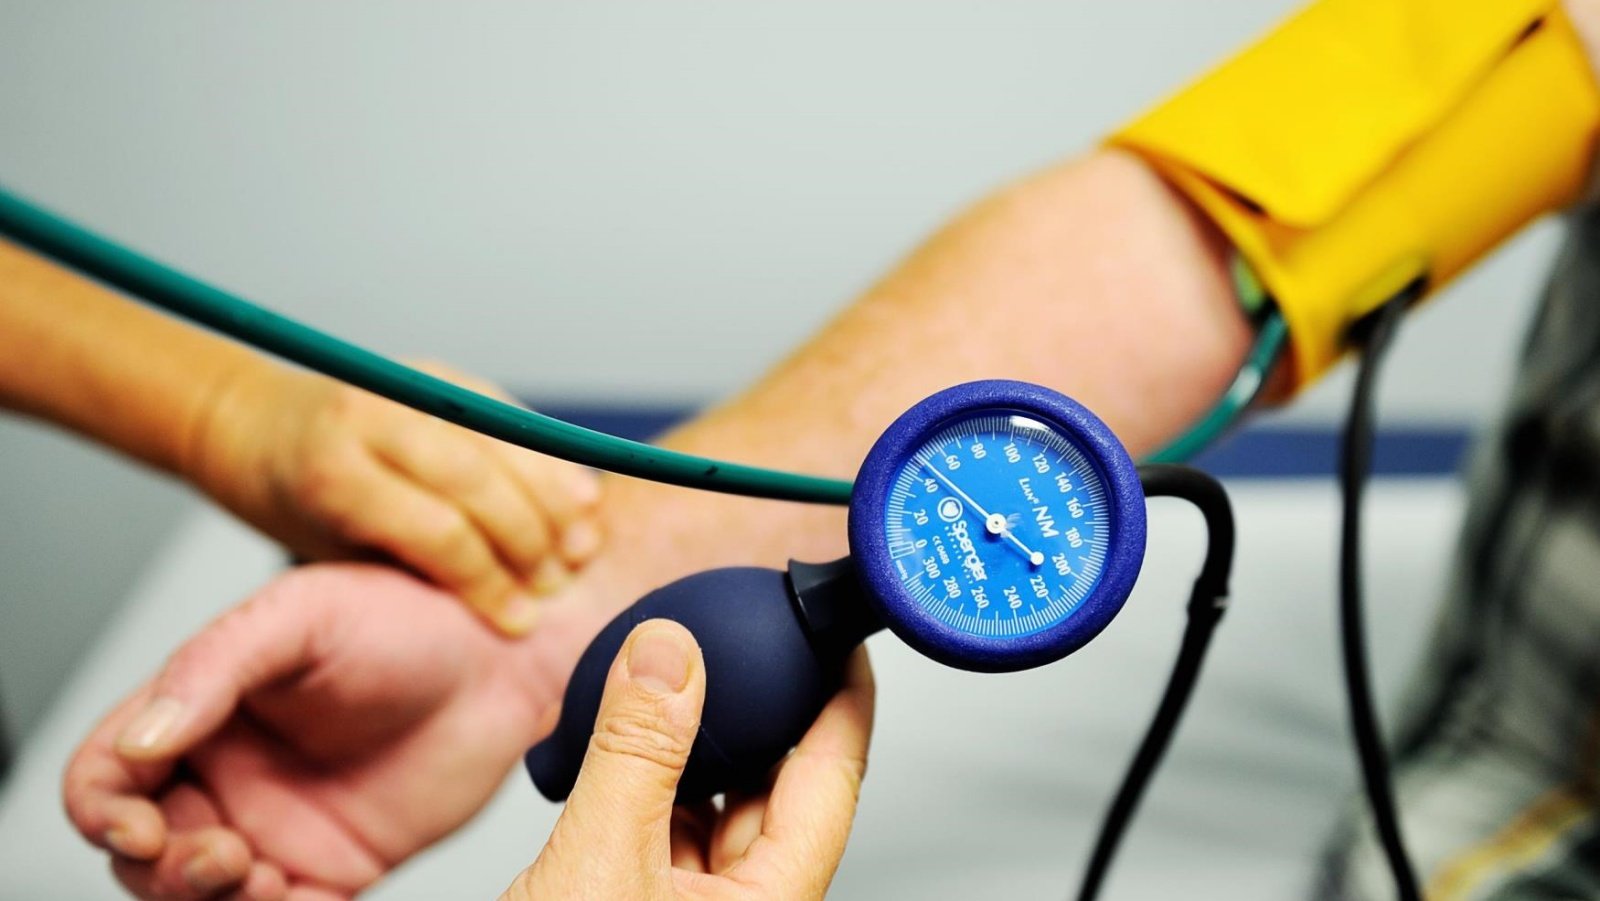 ارتفاع ضغط الدم يمكن أن يلحق أضراراً خطيرة بالقلب